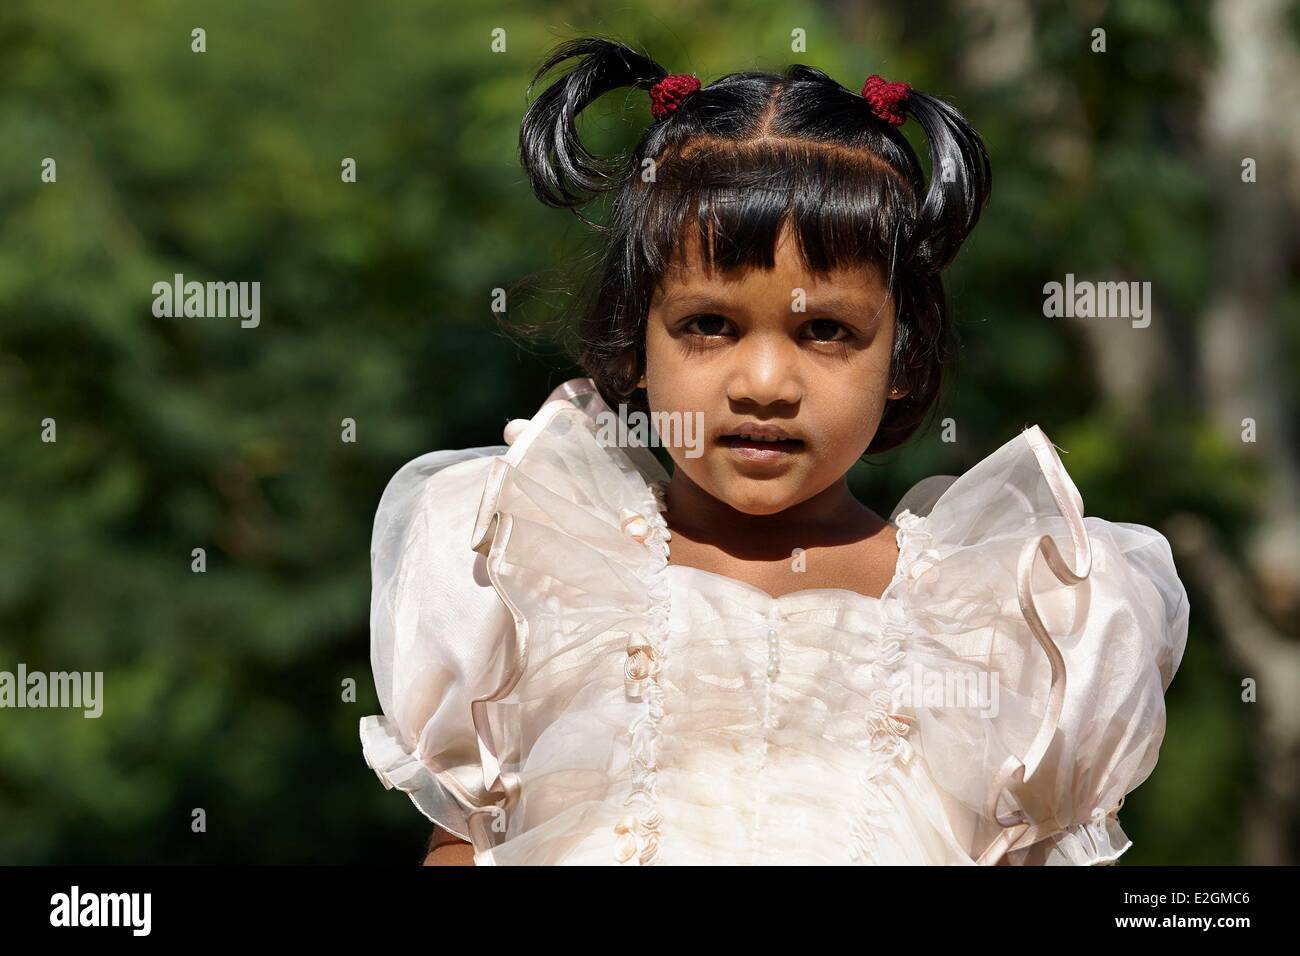 Sri Lanka Uva Province Haputale Lipton's seat Portrait of little Girl in Sunday best Stock Photo